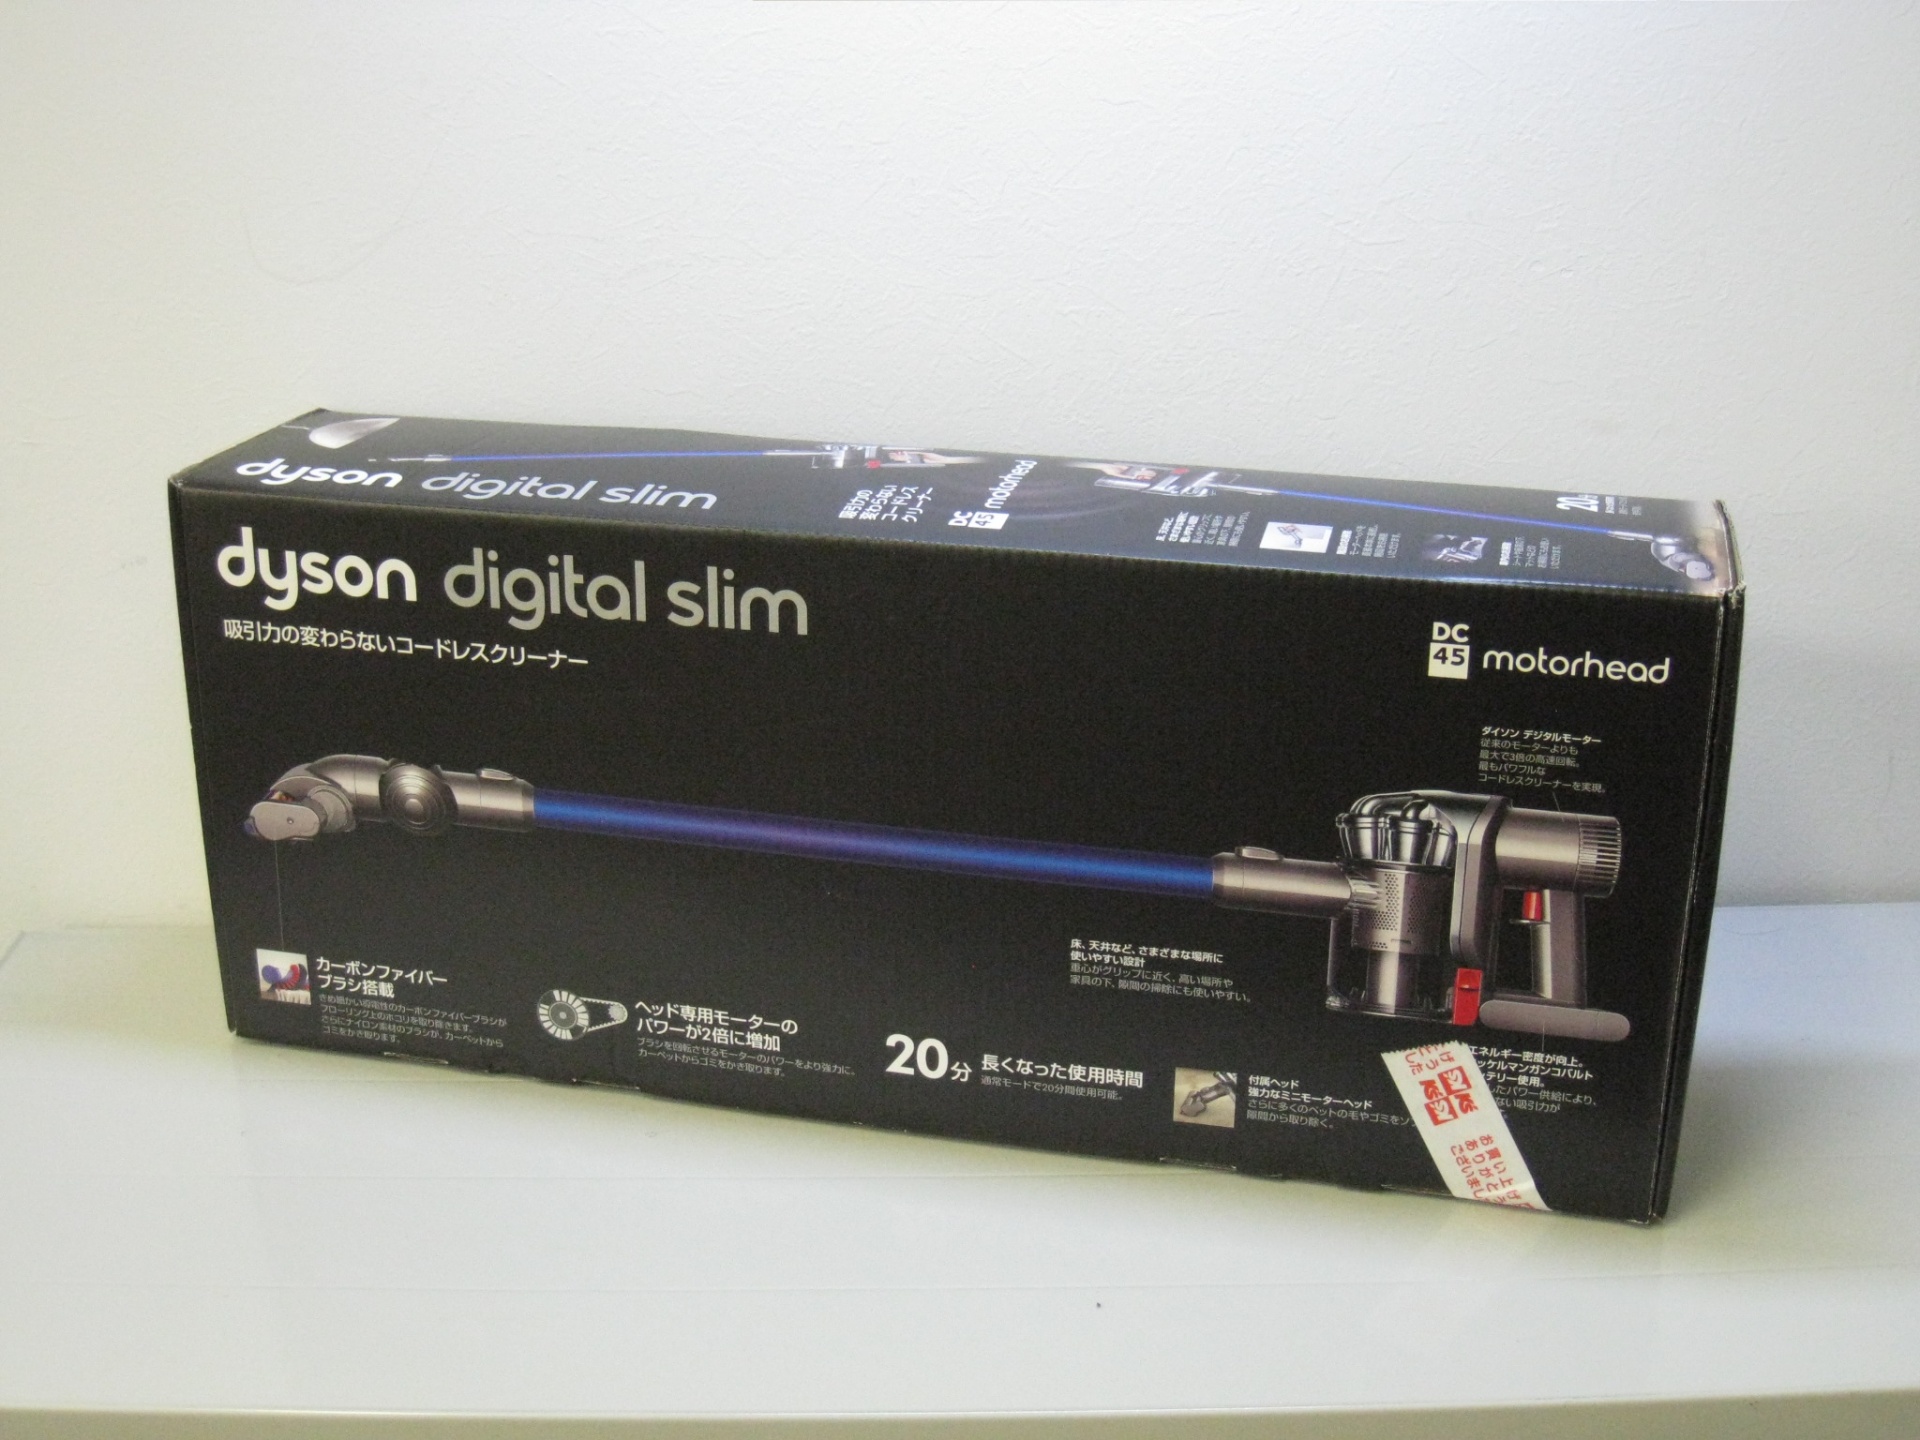 dyson ダイソン デジタルスリム DC45 モーターヘッド 電化製品買取強化中 | 香川県高松市の工具買取・販売に強いリサイクルショップ